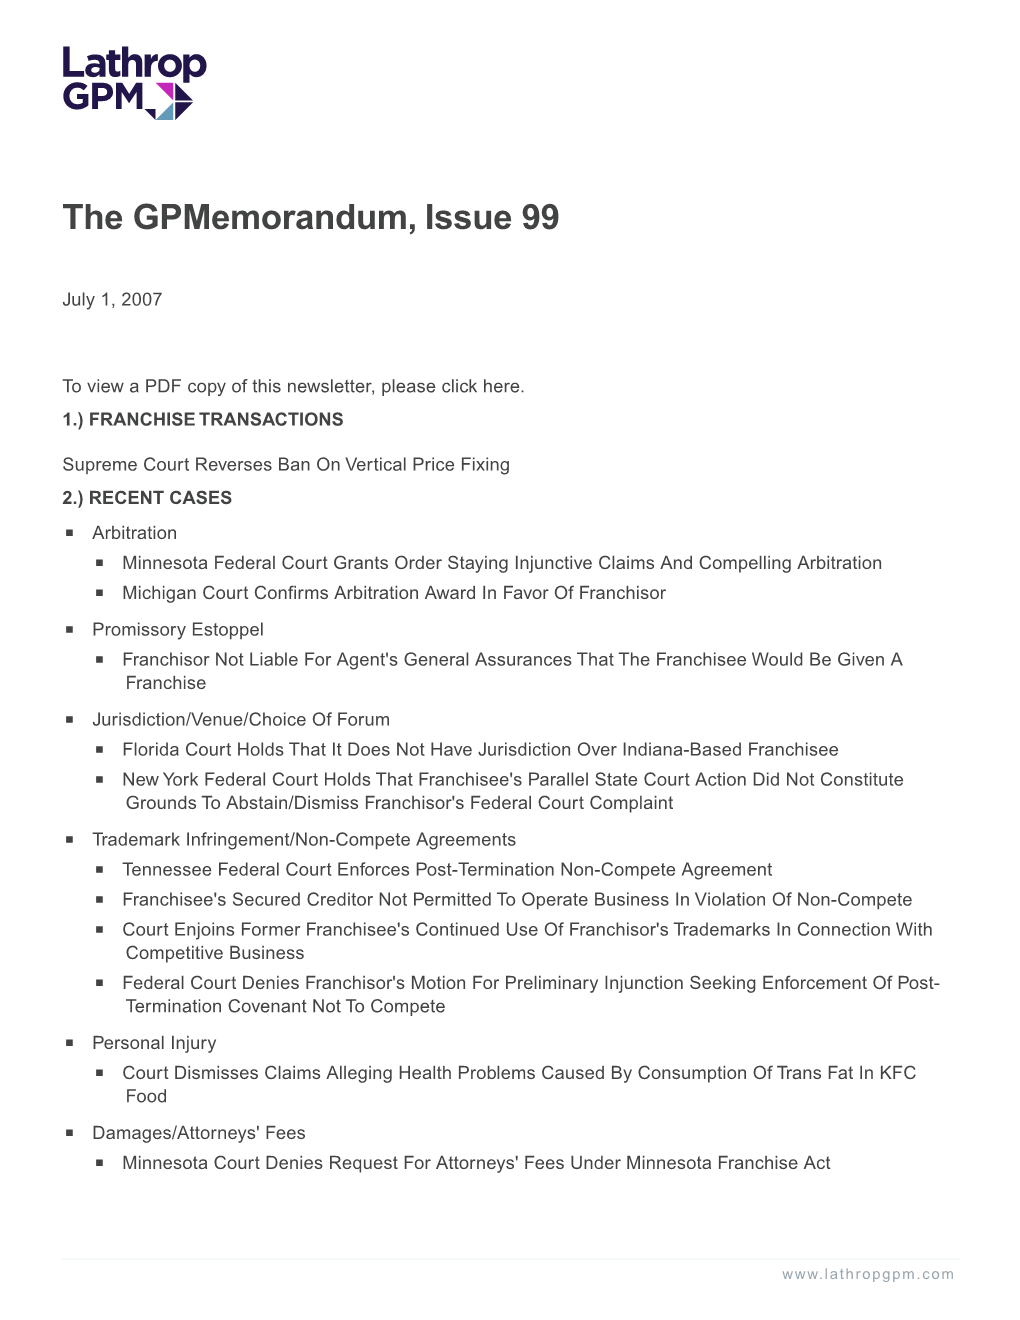 The Gpmemorandum, Issue 99